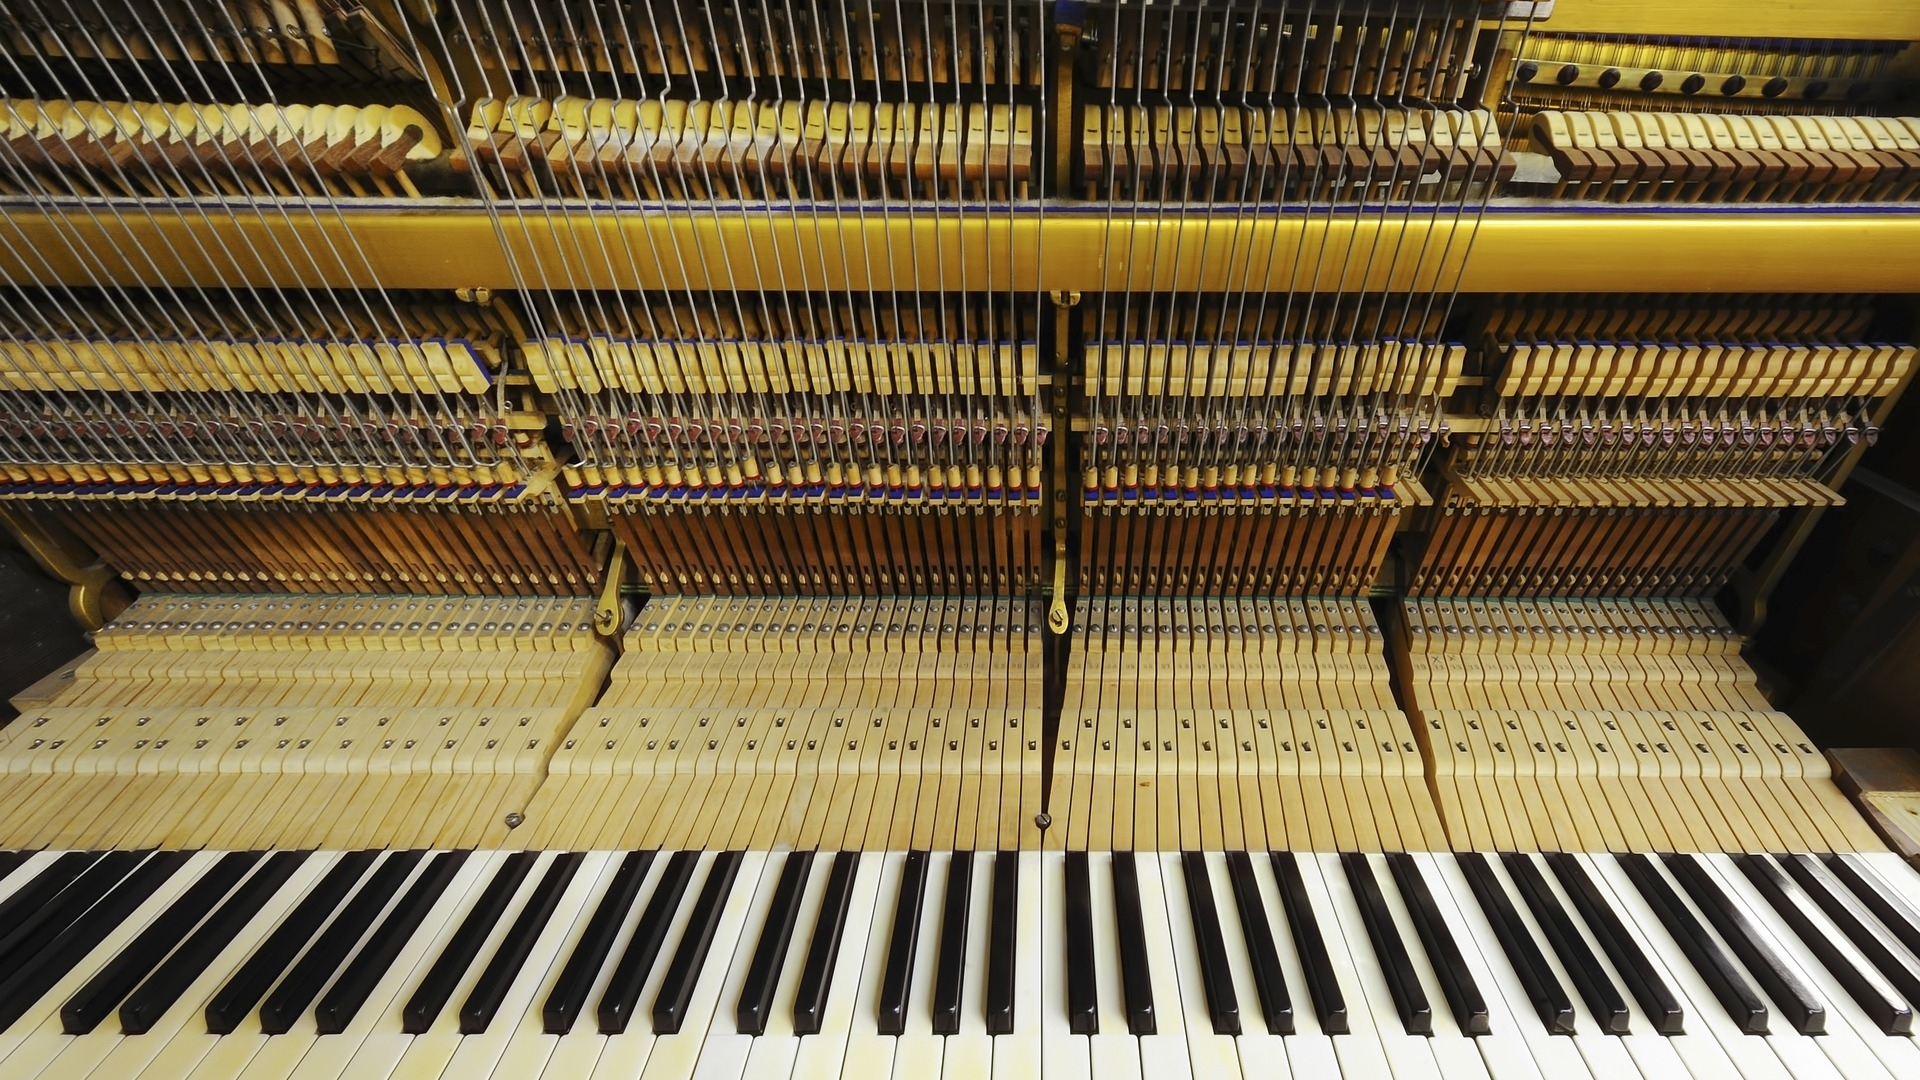 Reparatie piano of vleugel